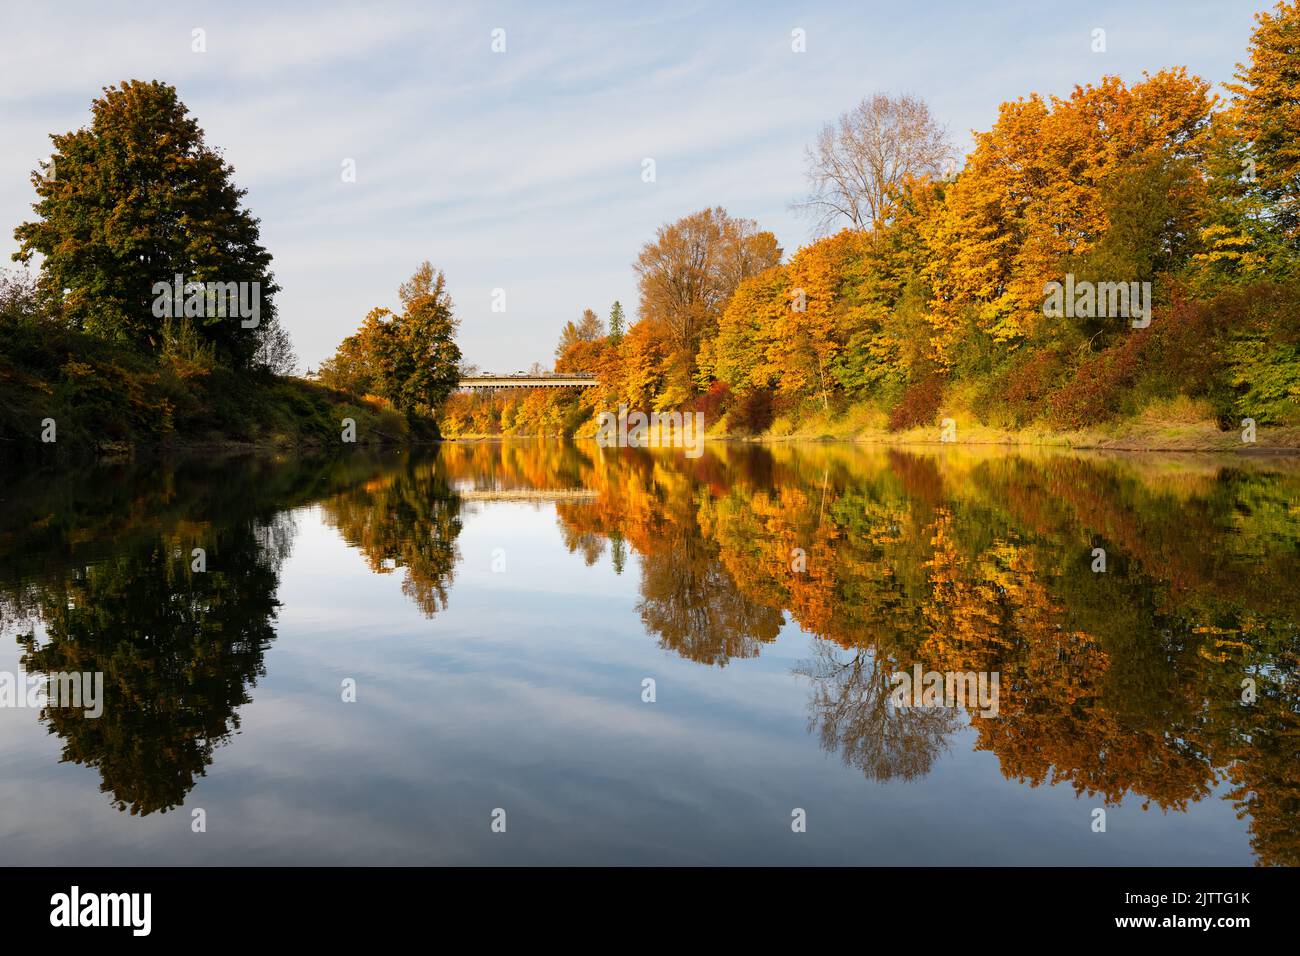 Rivière Snoqualmie bordée d'arbres d'automne aux couleurs éclatantes Banque D'Images